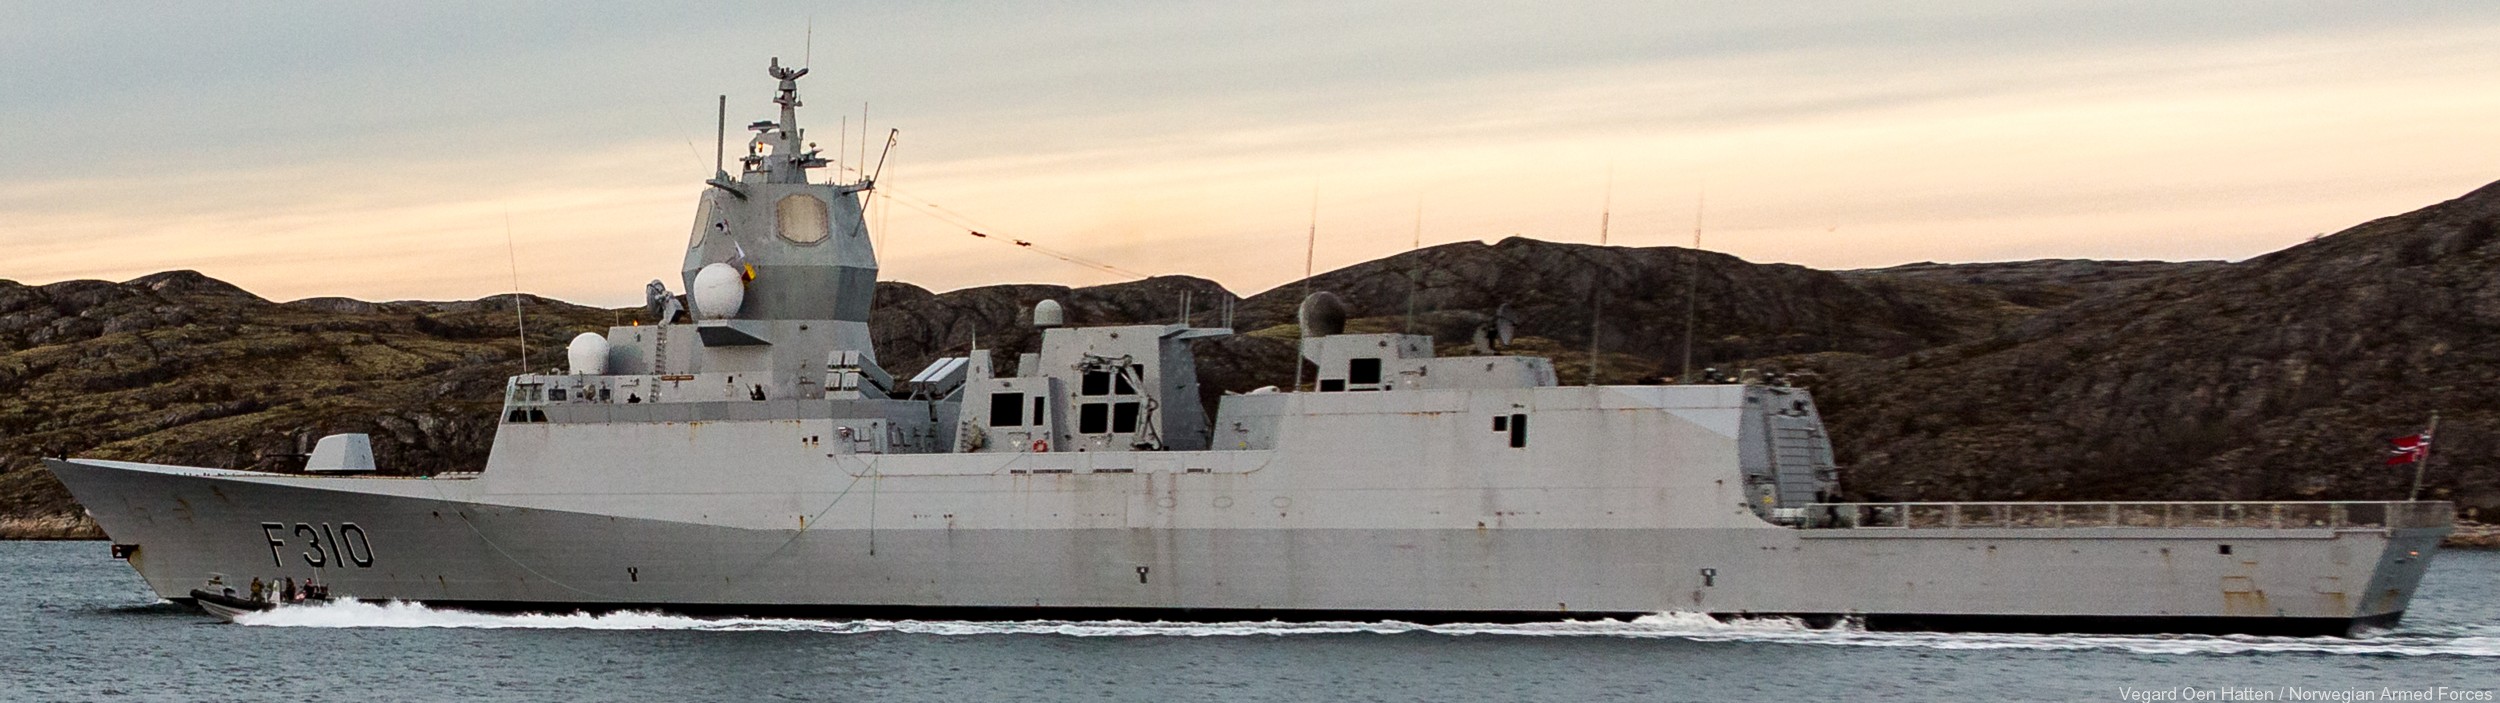 f-310 fridtjof nansen hnoms knm frigate royal norwegian navy sjoforsvaret 28